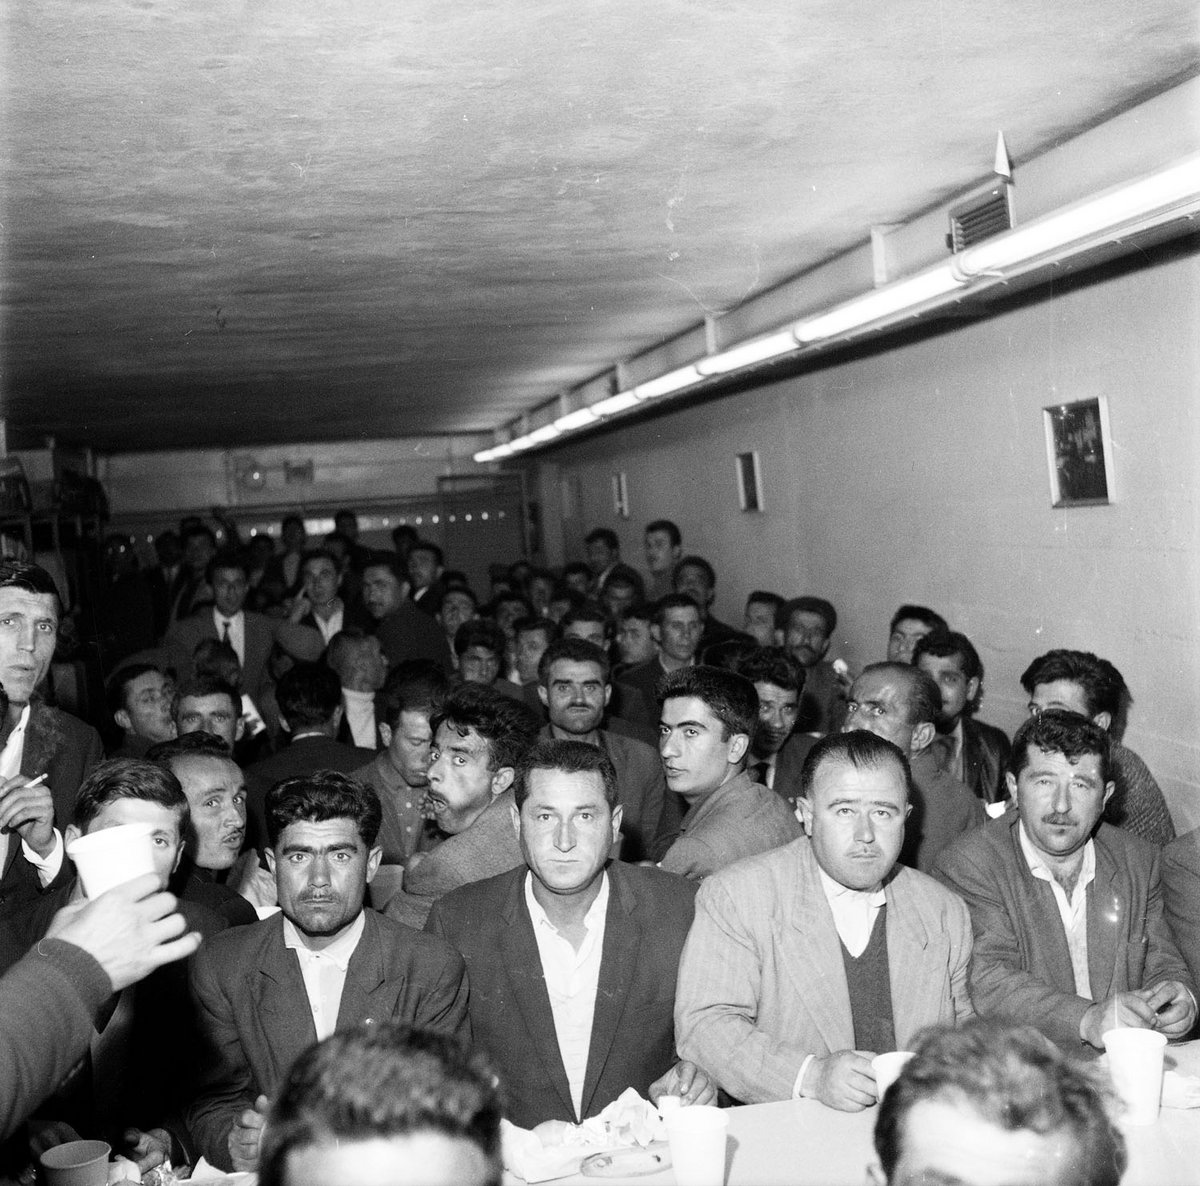 Schwarz-Weiß-Fotografie einer großen Gruppe von Männern.